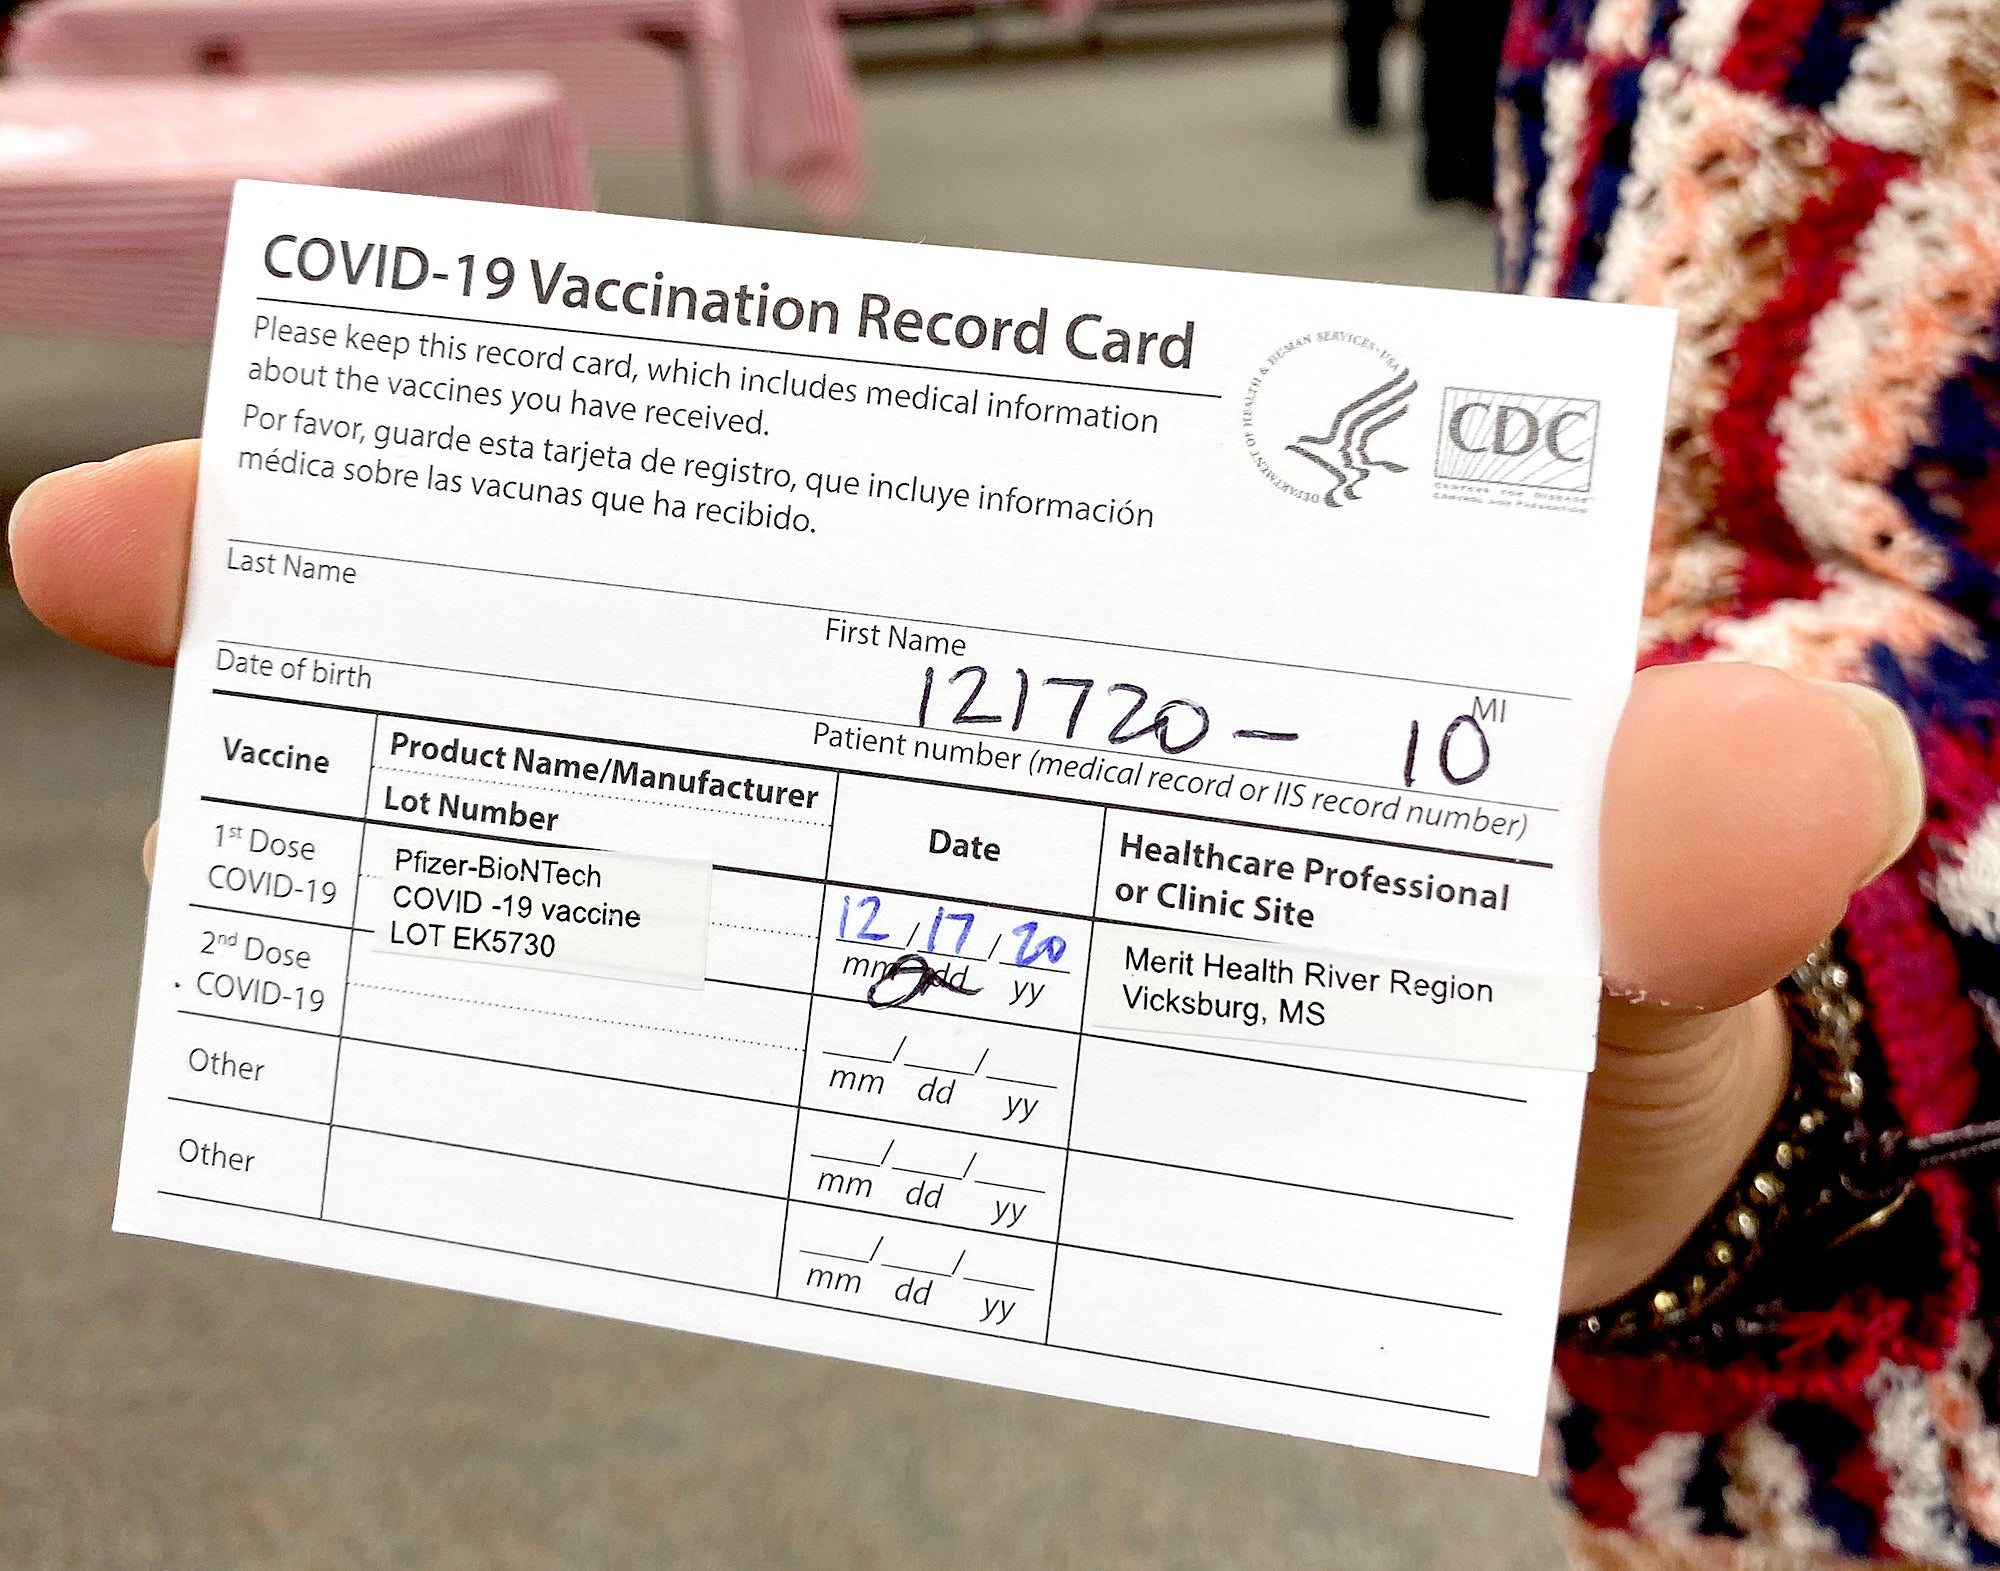 Vicksburg Health Officials Begin Receiving Covid-19 Vaccine - The Vicksburg Post The Vicksburg Post